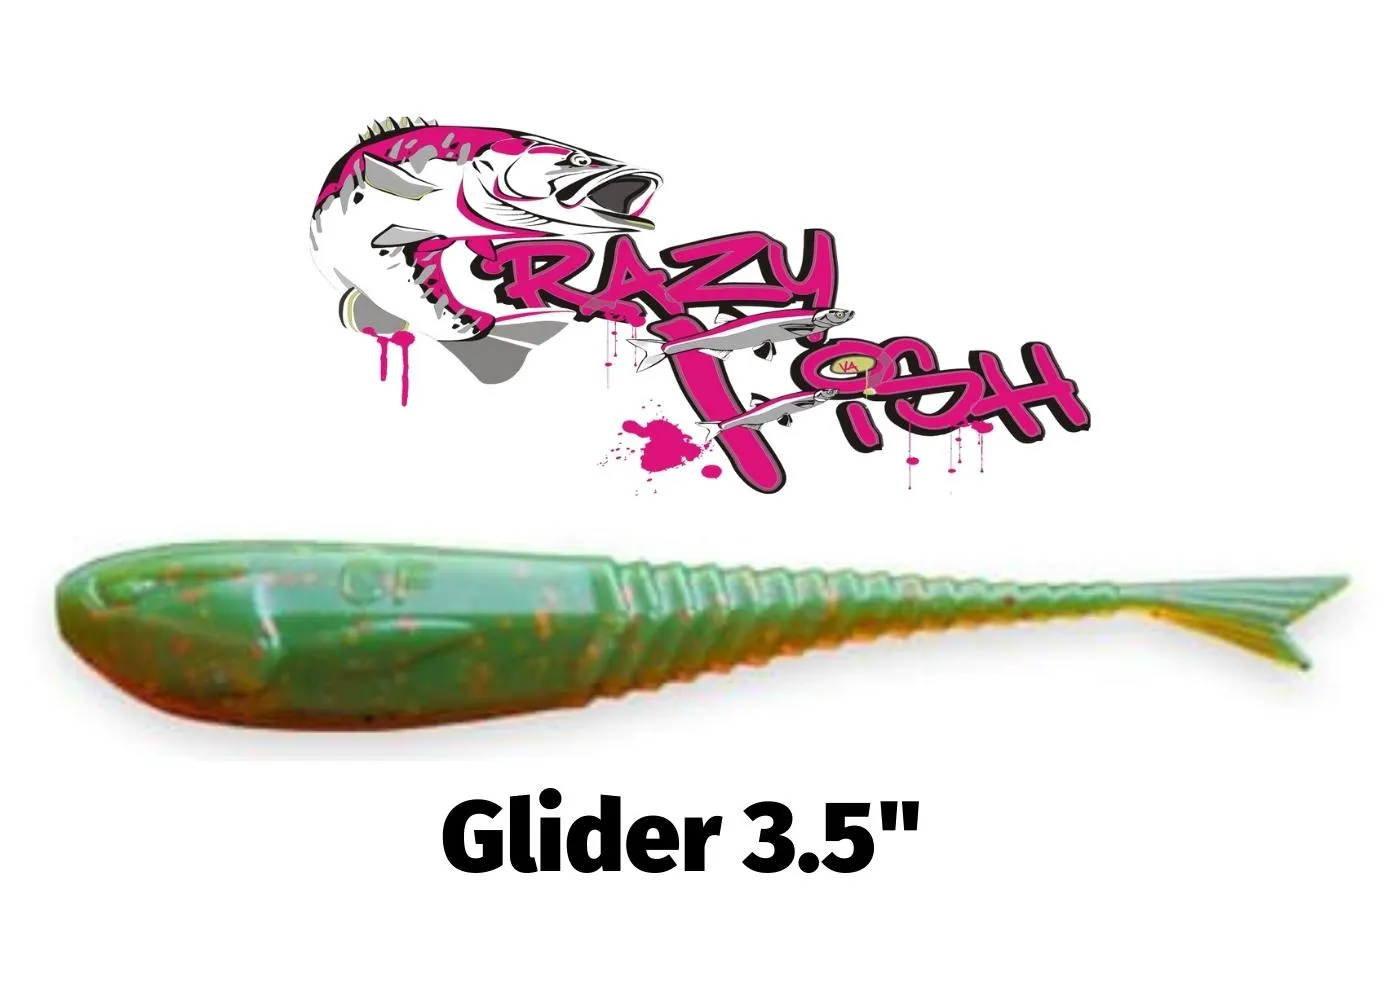 Крейзи фиш оптимус. Силиконовая приманка Crazy Fish Glider 3.5 f36-90-42-6. Мягкие приманки Crazy Fish Glider 1.2" кальмар # мix 01 + 09 (16шт). Crazy Fish наклейка. Джерси Crazy Fish.